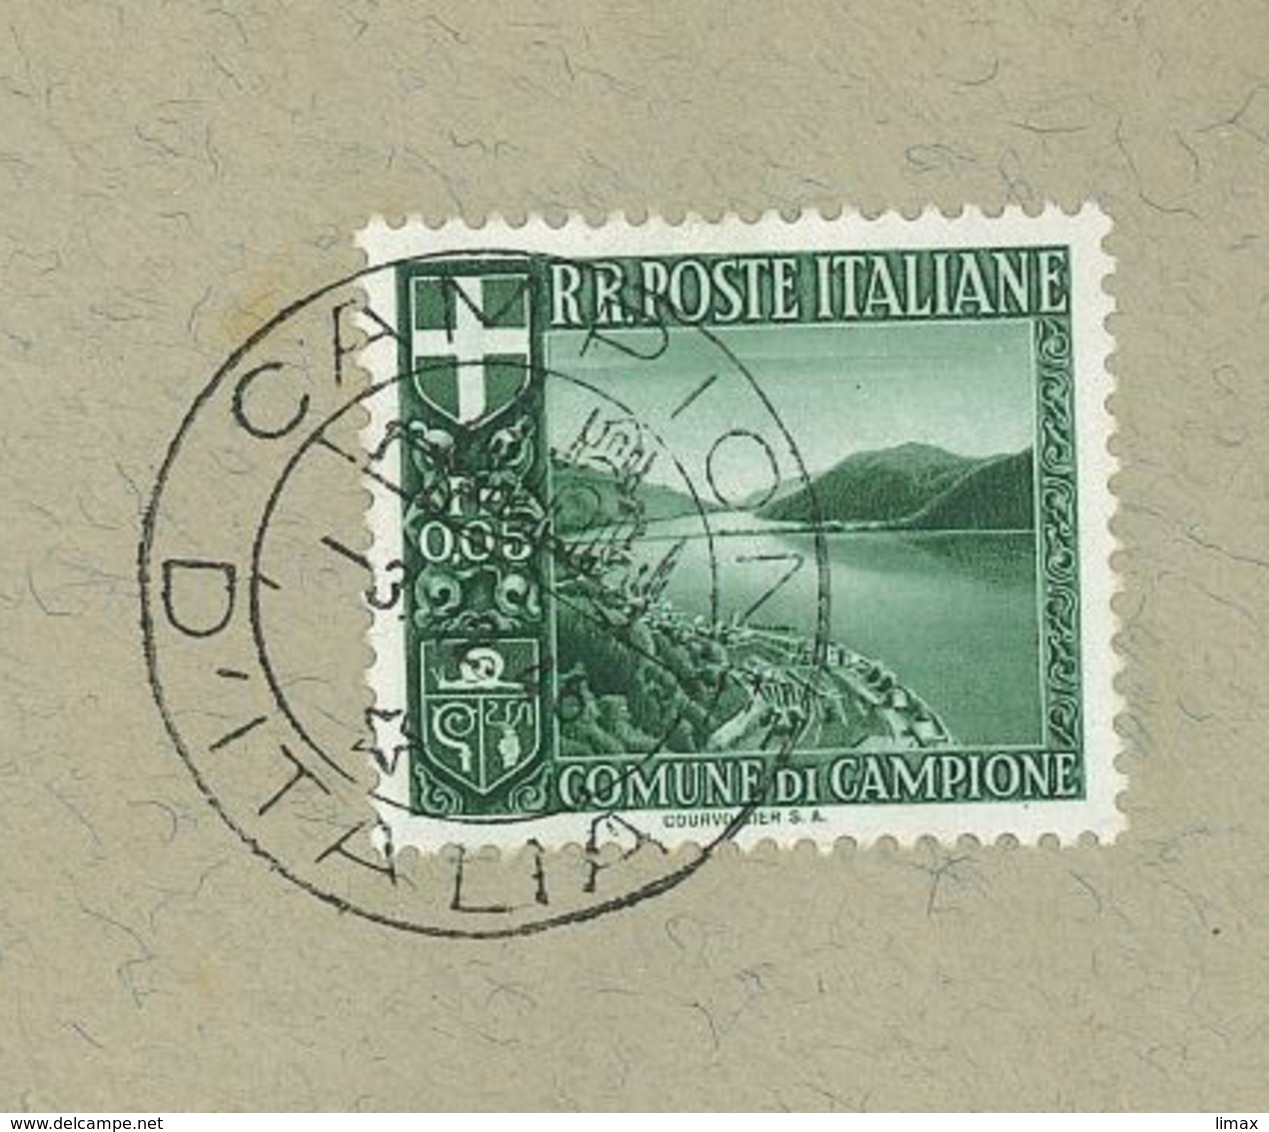 Campione D'Italia 1946 Wappen Schnecke Tessin Exklave Lugano Mussolini (1933) - 1946-47 Période Corpo Polacco